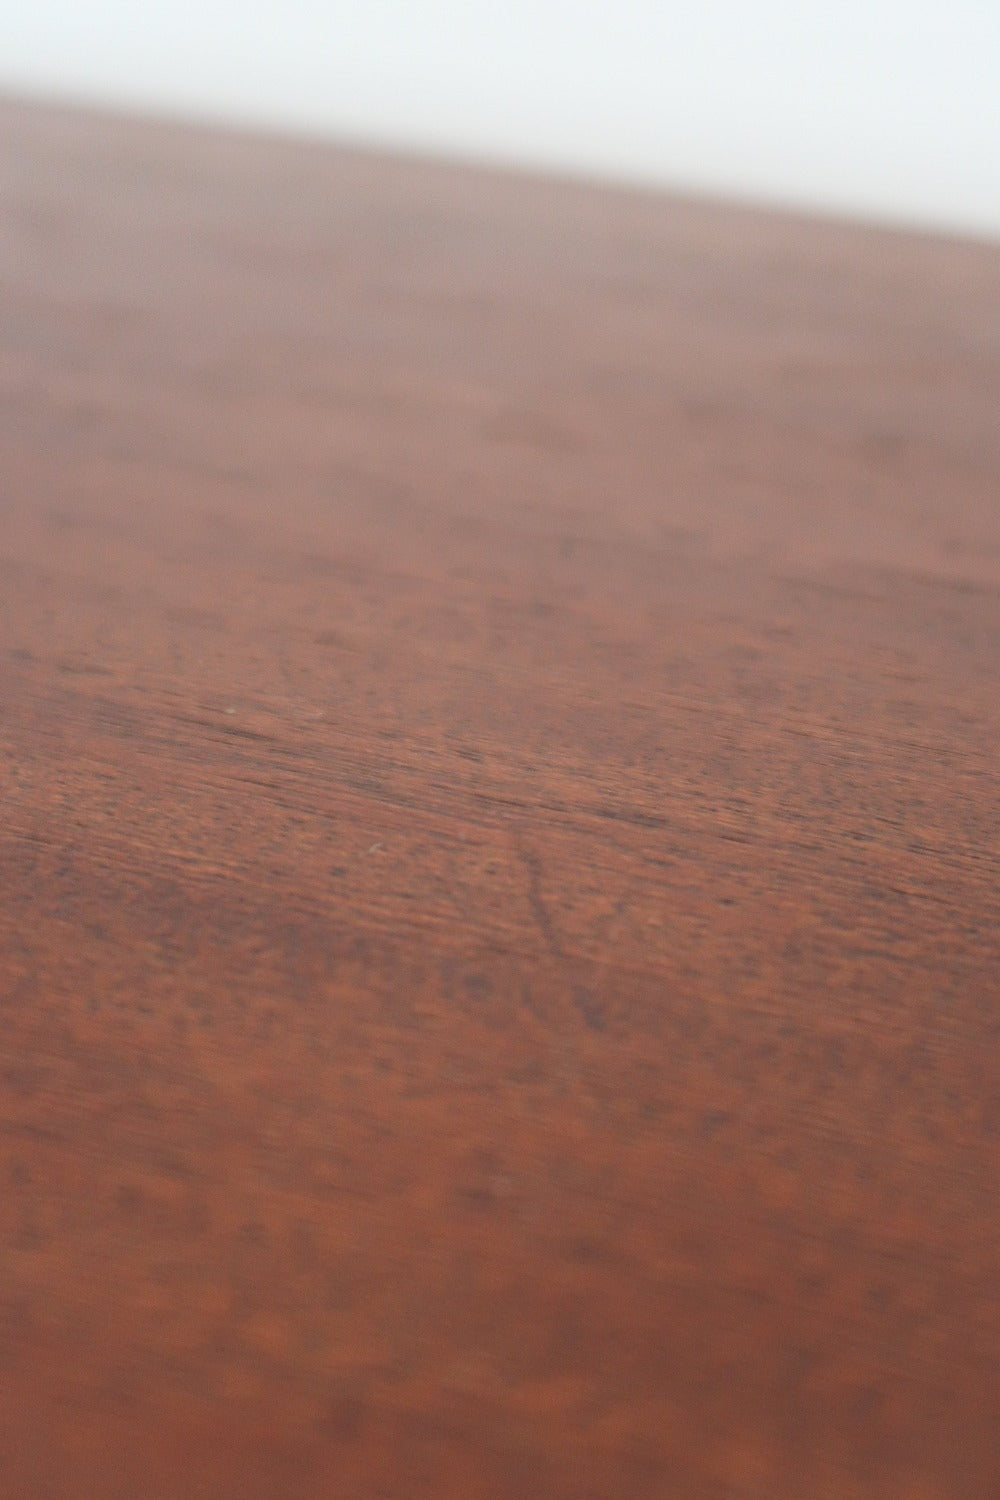 table basse chevet bout canapé appoint meuble vintage danois moderniste chrome laiton bois formica métal noir